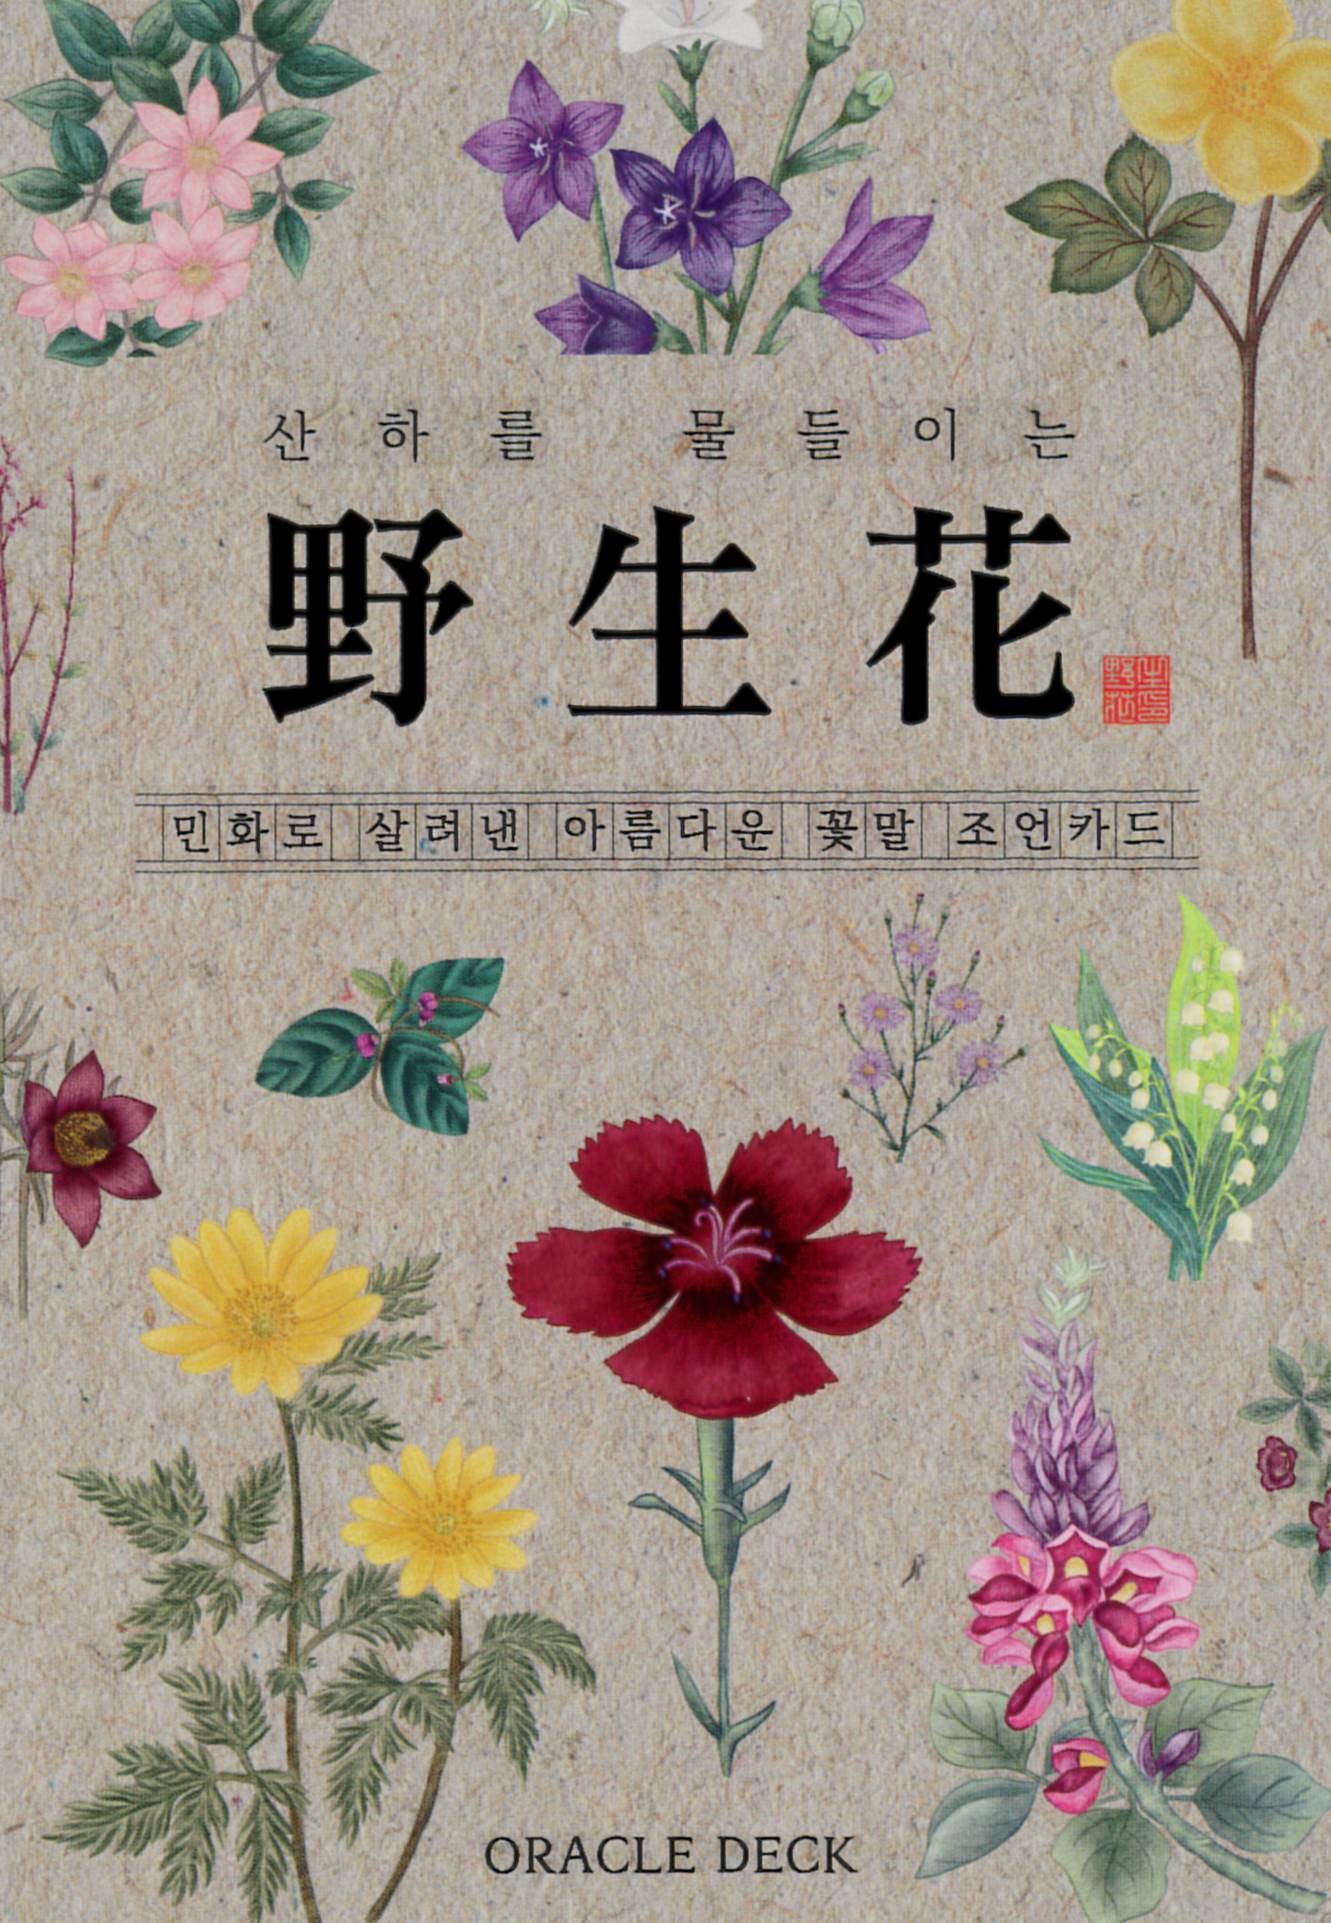 再入荷 ワイルドフラワーズオラクルデッキ 野生花ーwild Flowers Oracle Deckー 22年1月発売 日本のオラクルカード タロットカード全集オンラインストア